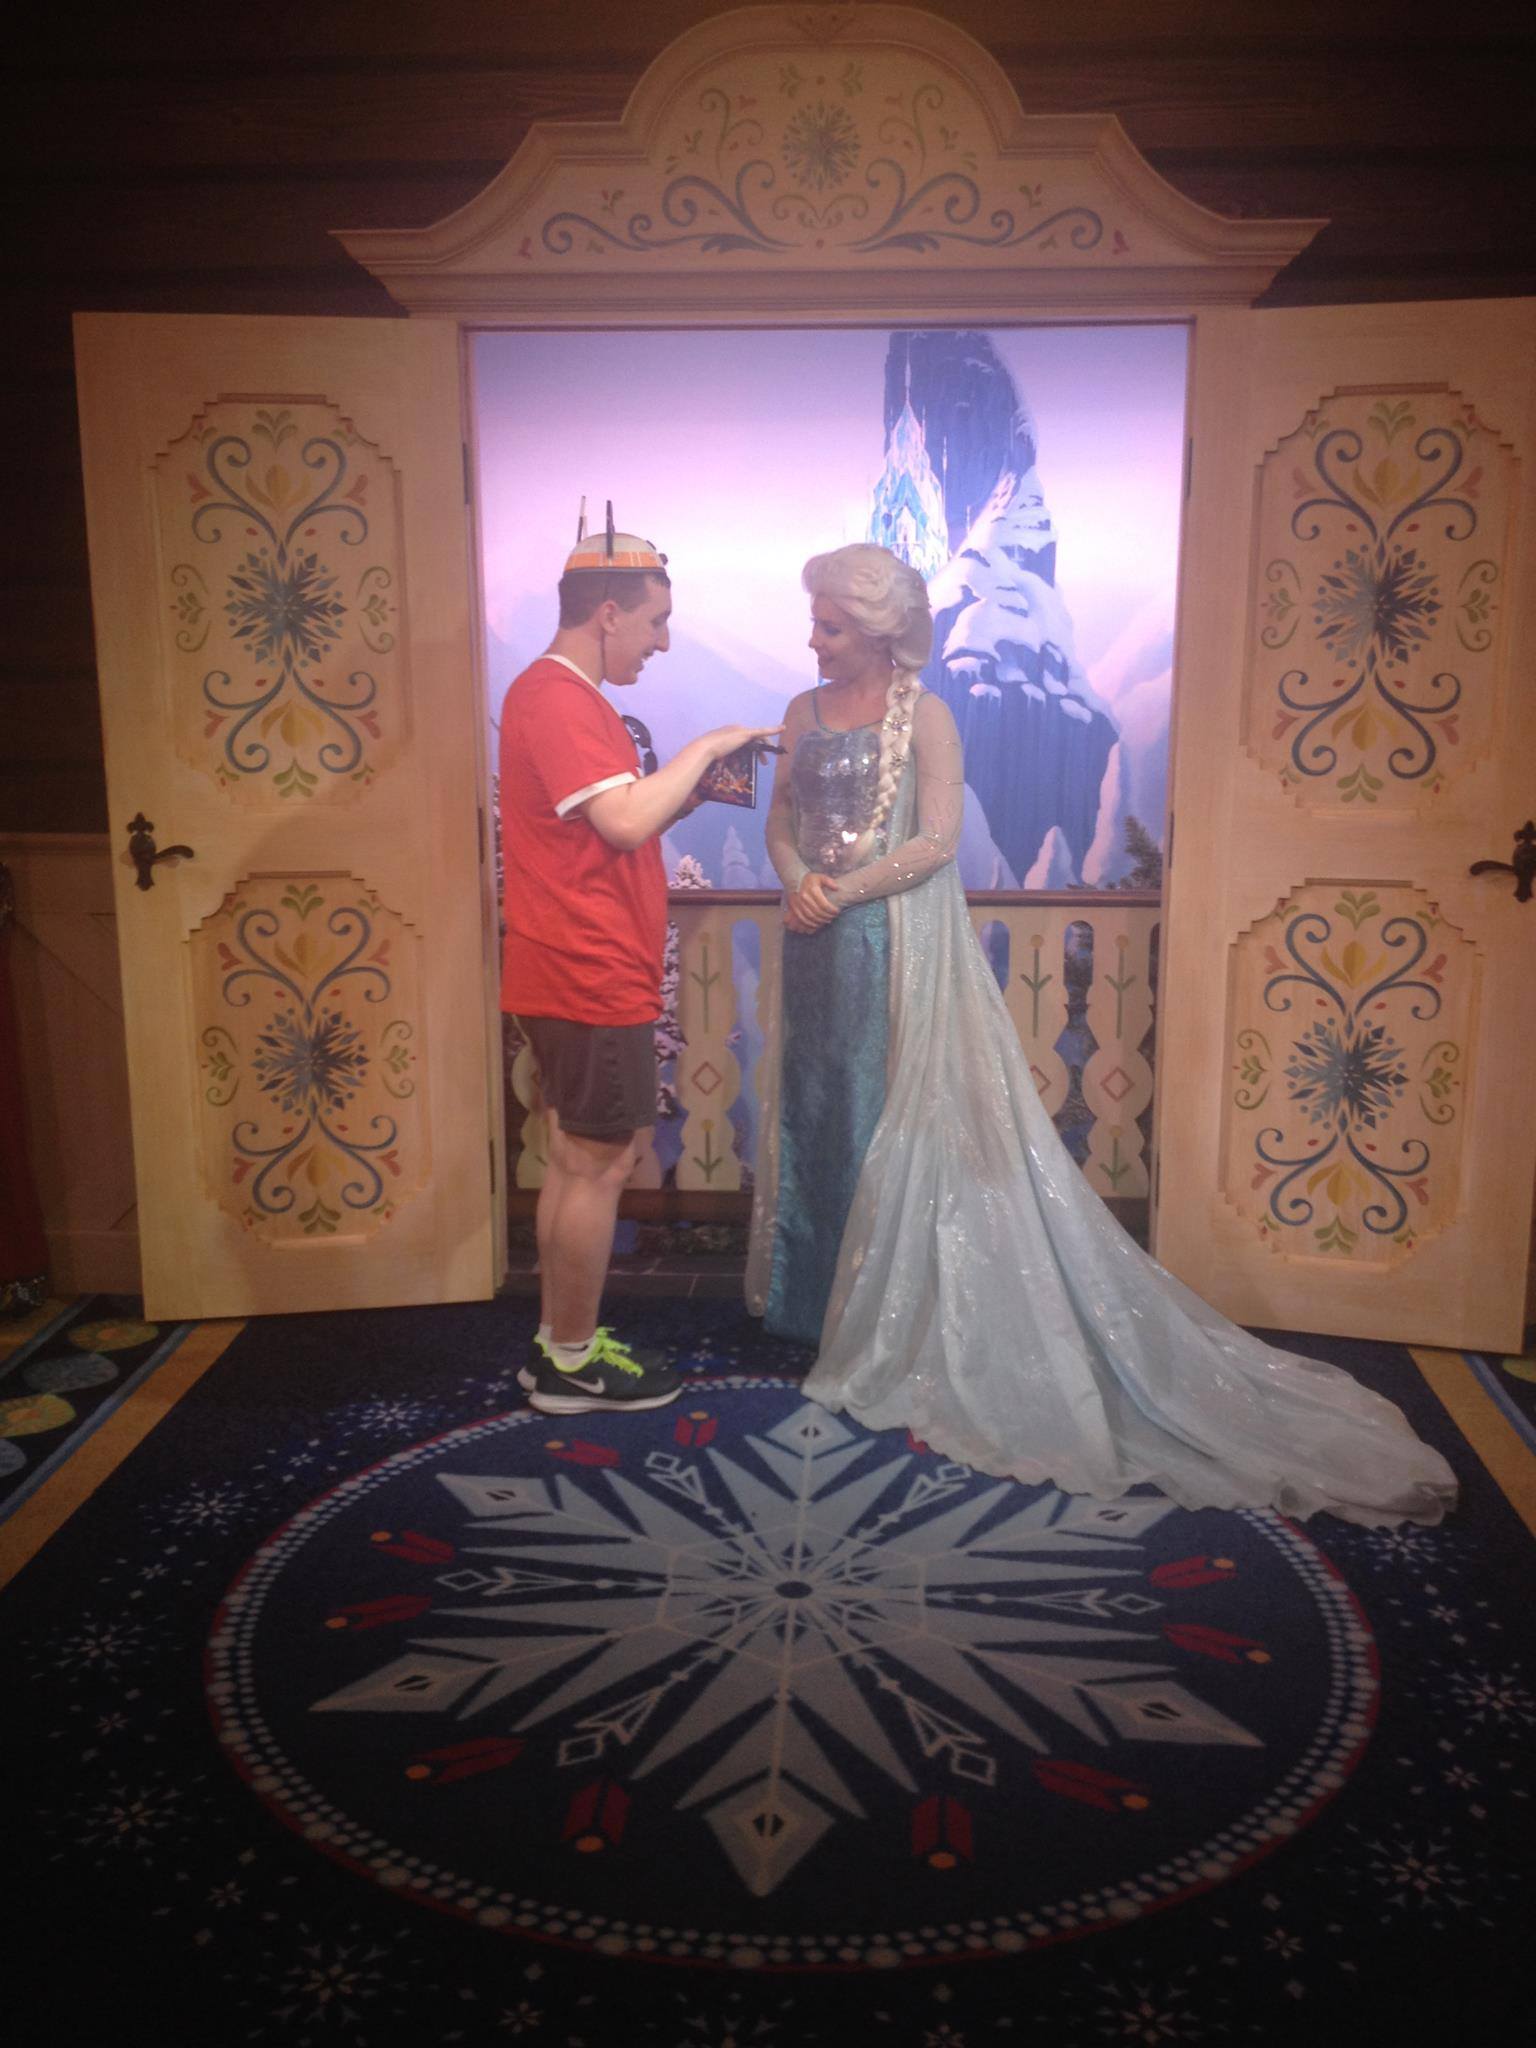 Talking to Queen Elsa